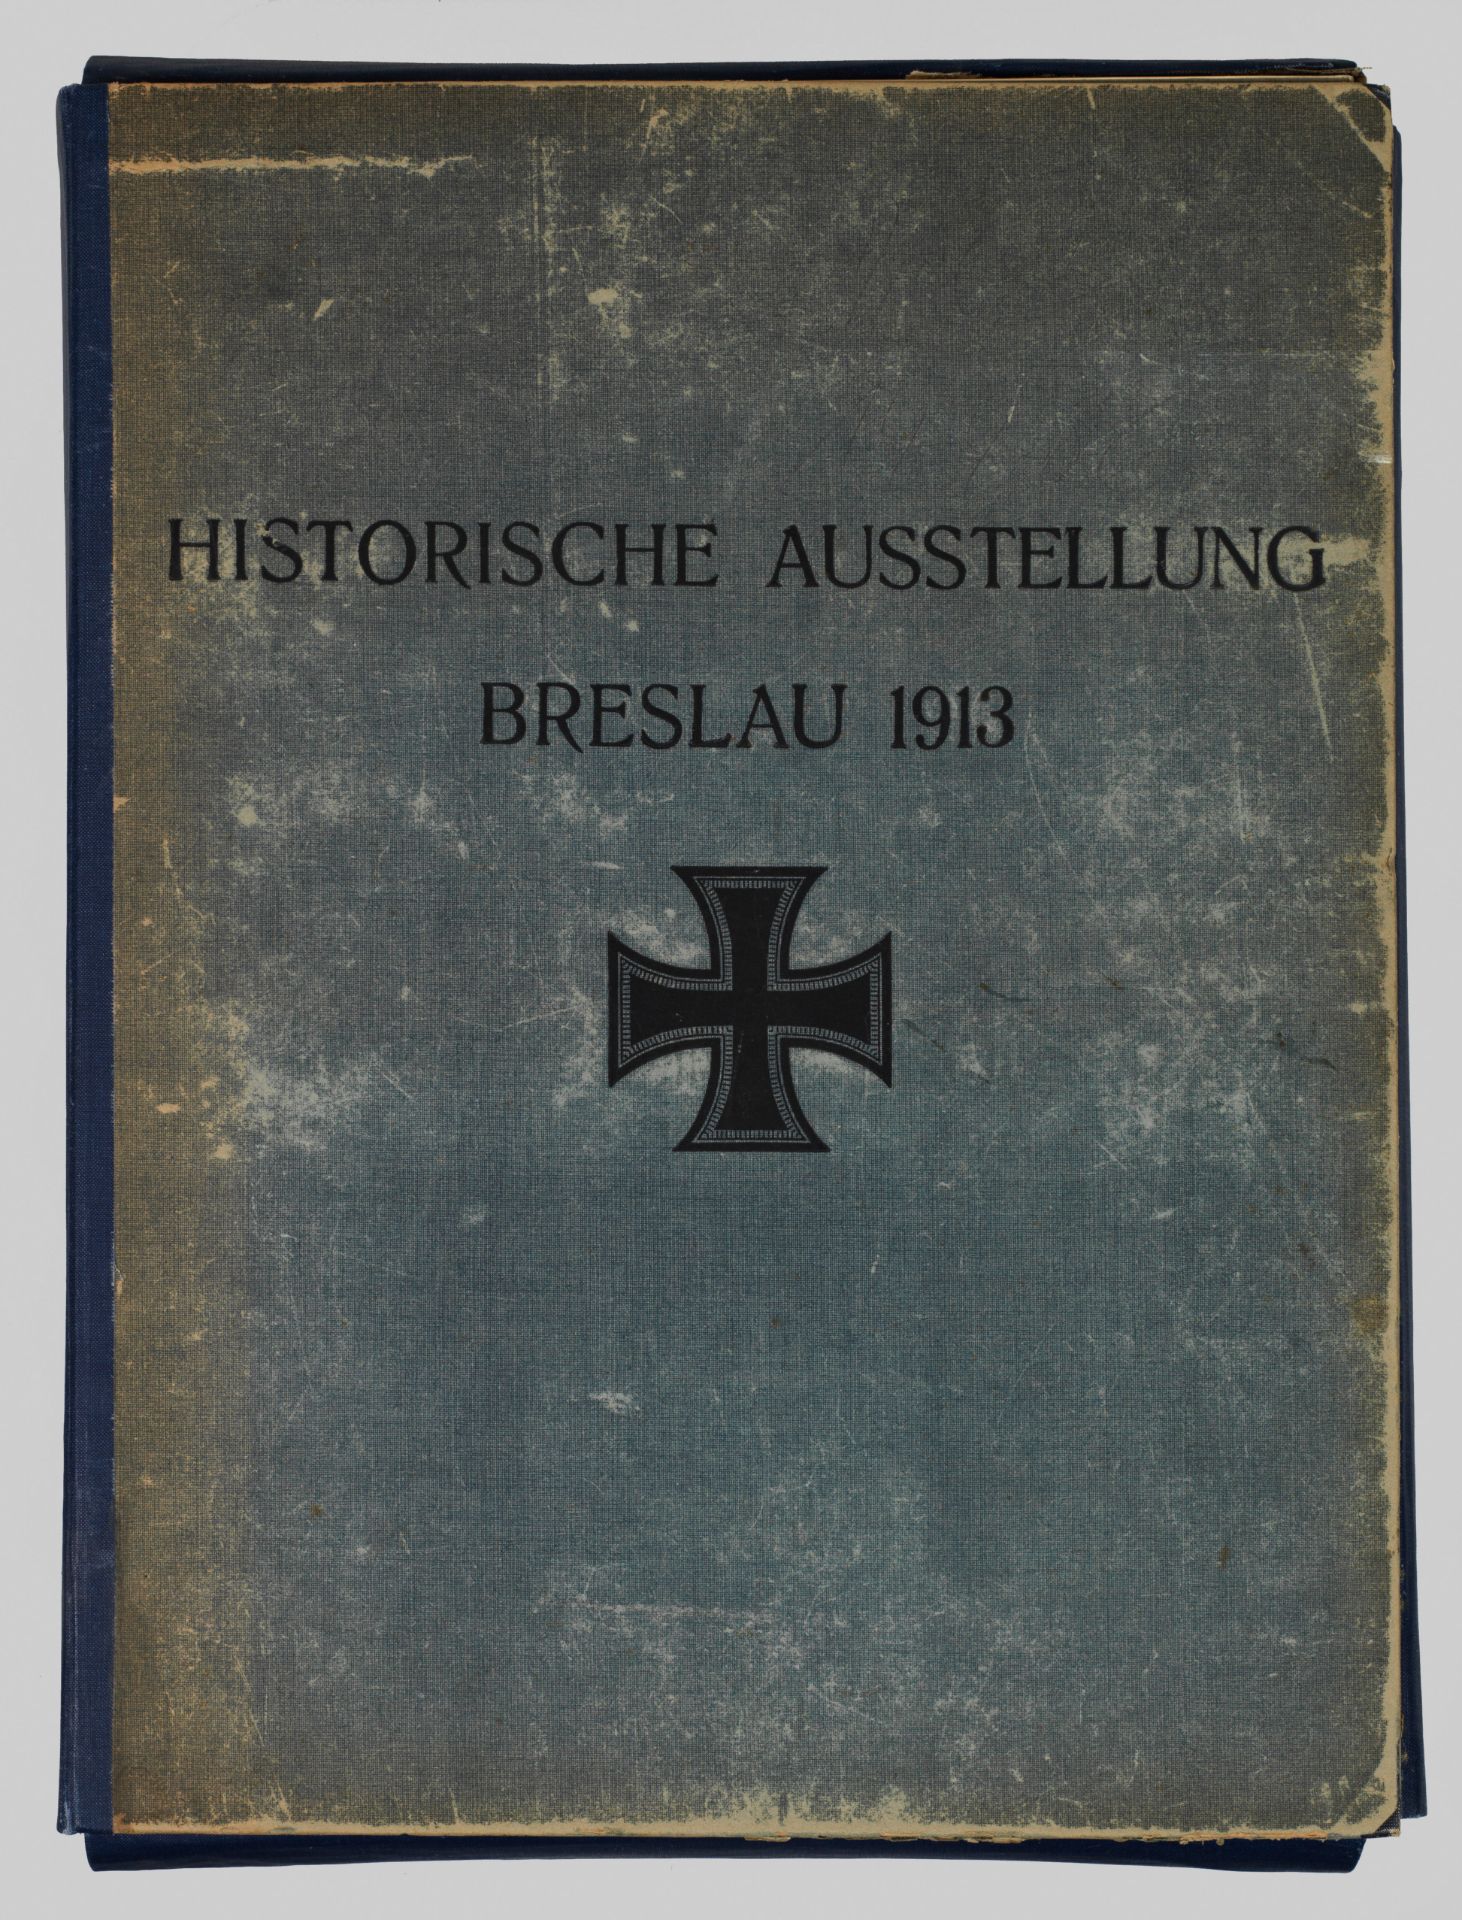 Karl Masner und Erwin Hintze: "Die Historische